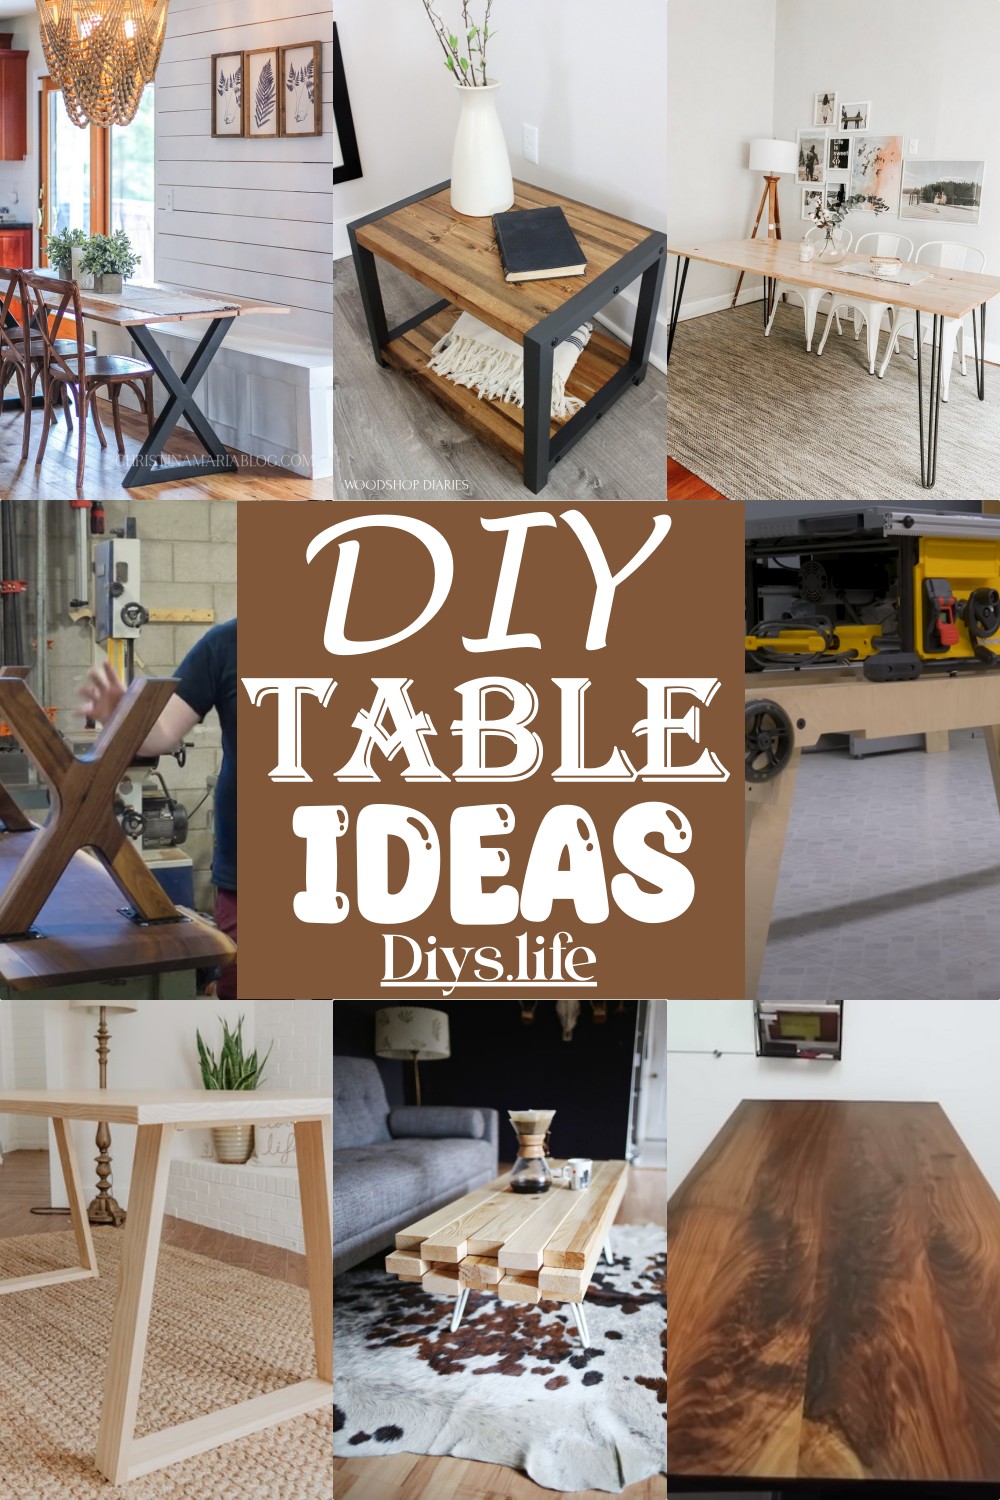 DIY Table Ideas